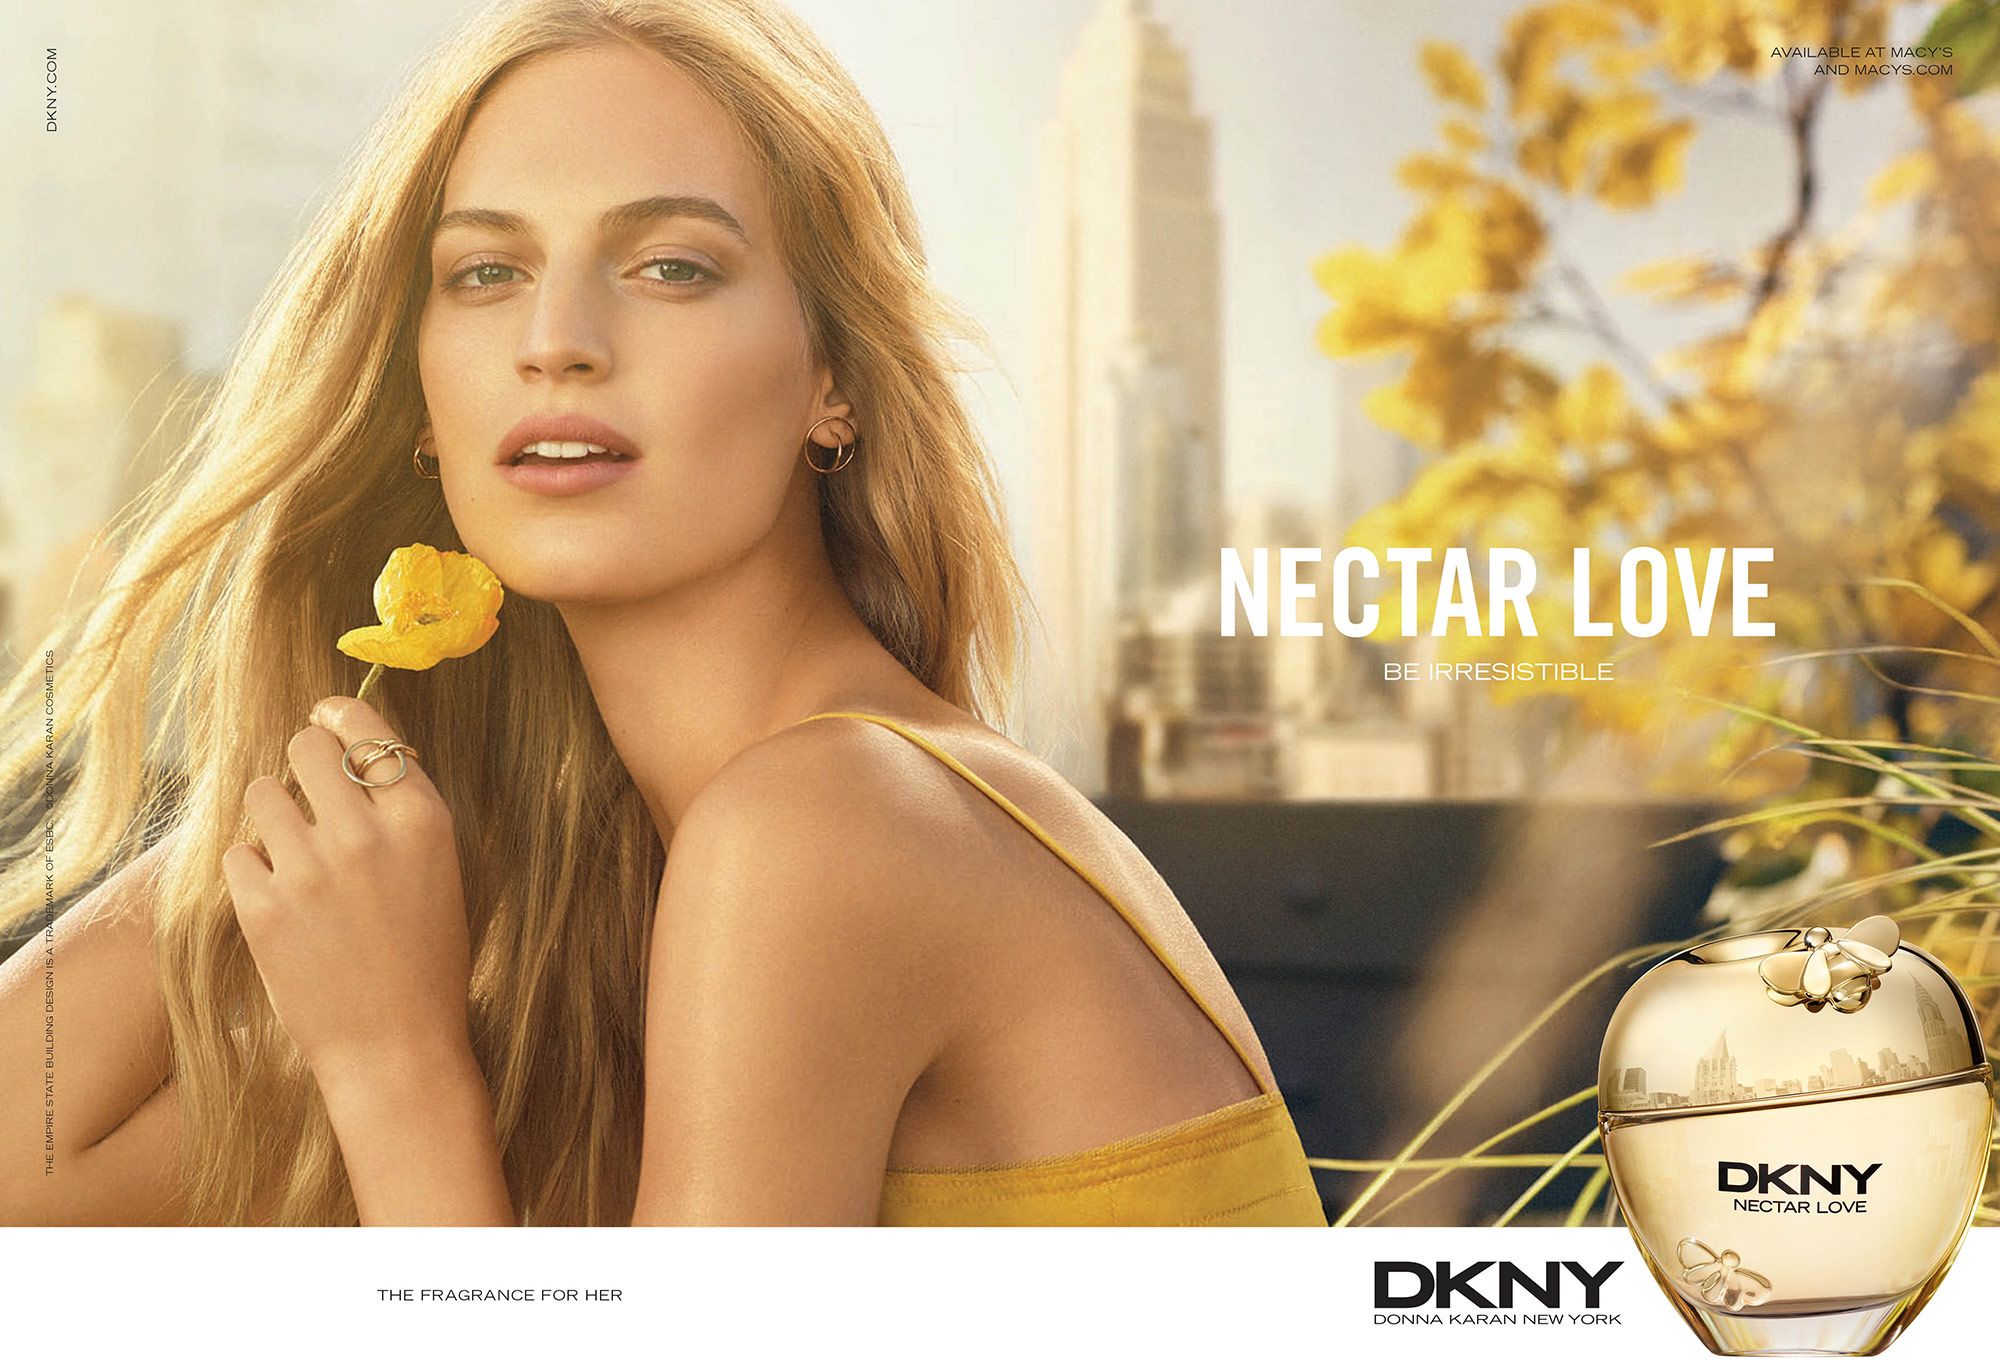 DKNY Petals Hand Towel - Macy's